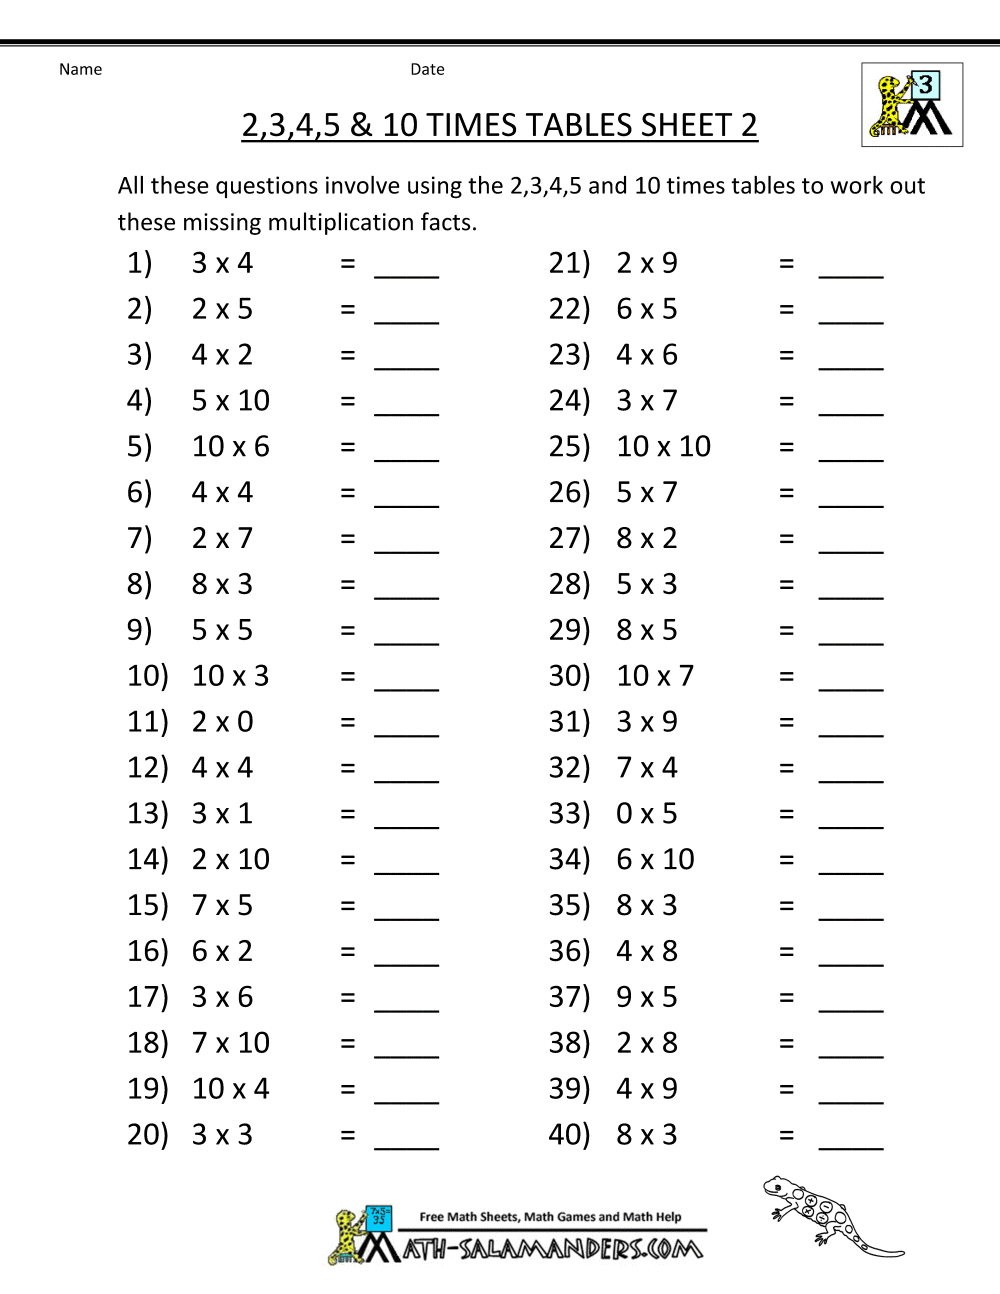 Multiplication Table Worksheet Printable